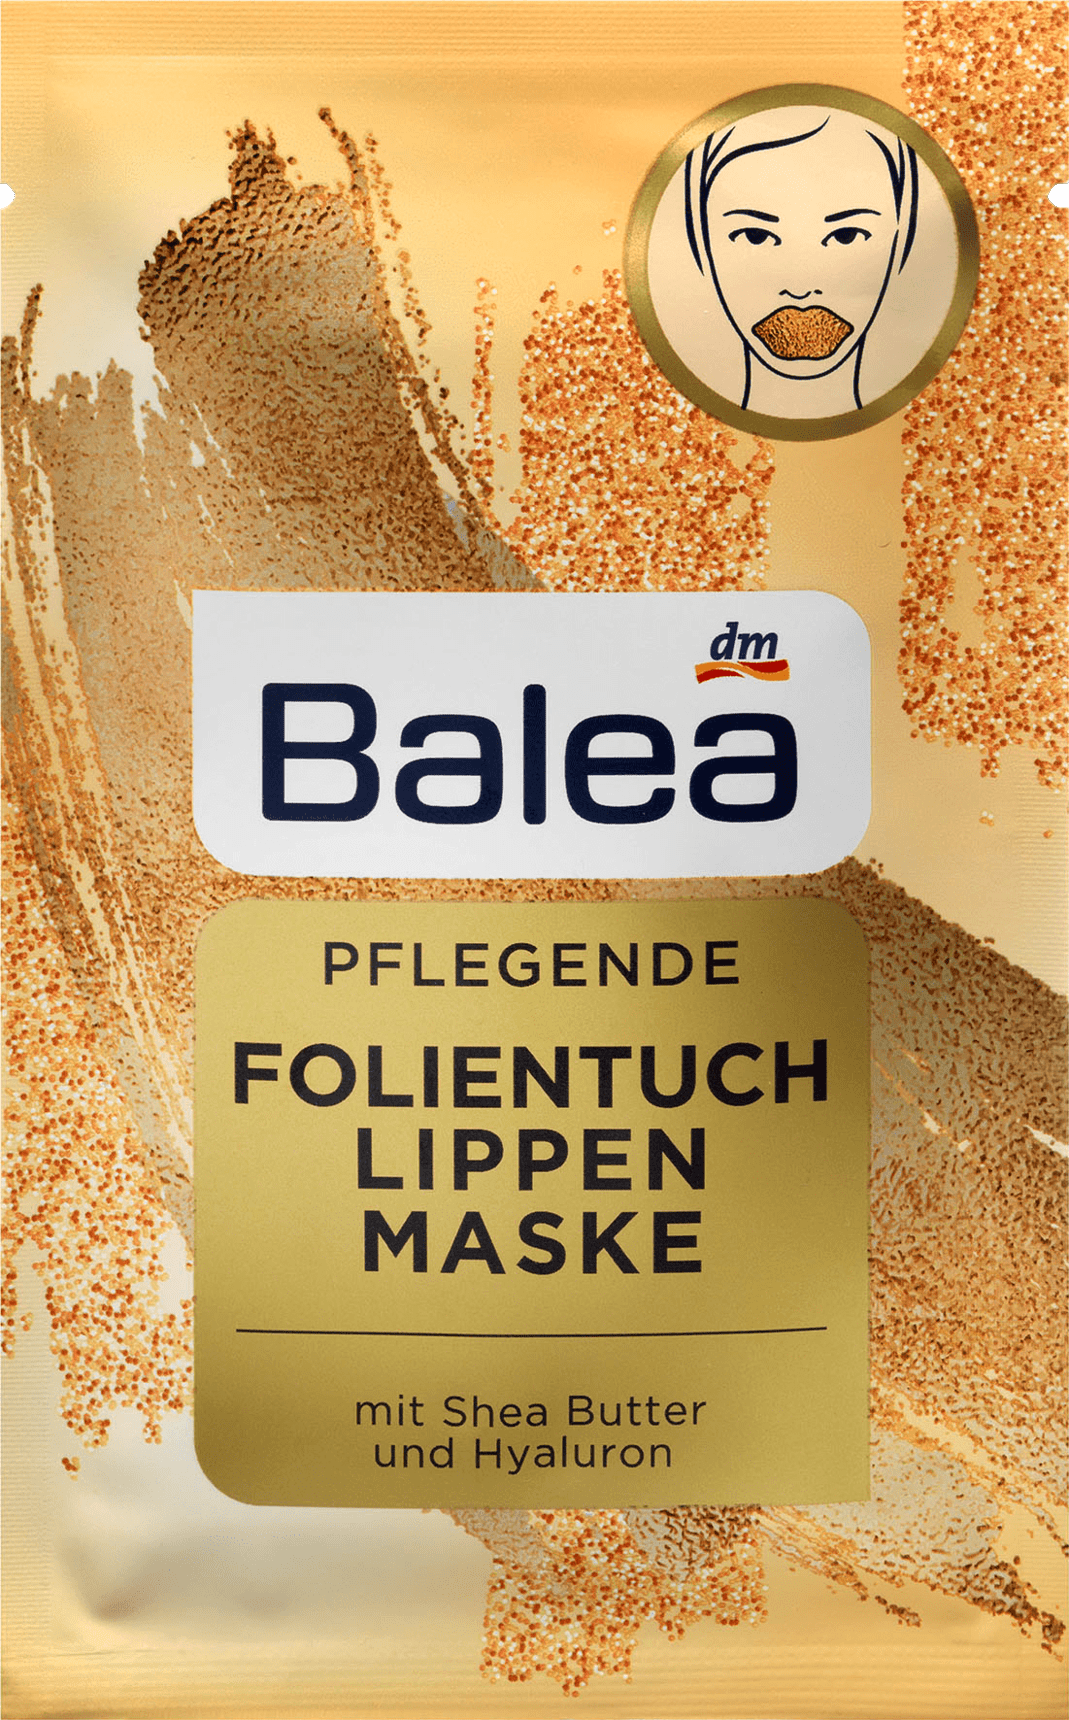 Balea Folientuchmaske Lippe Gold, 1 St